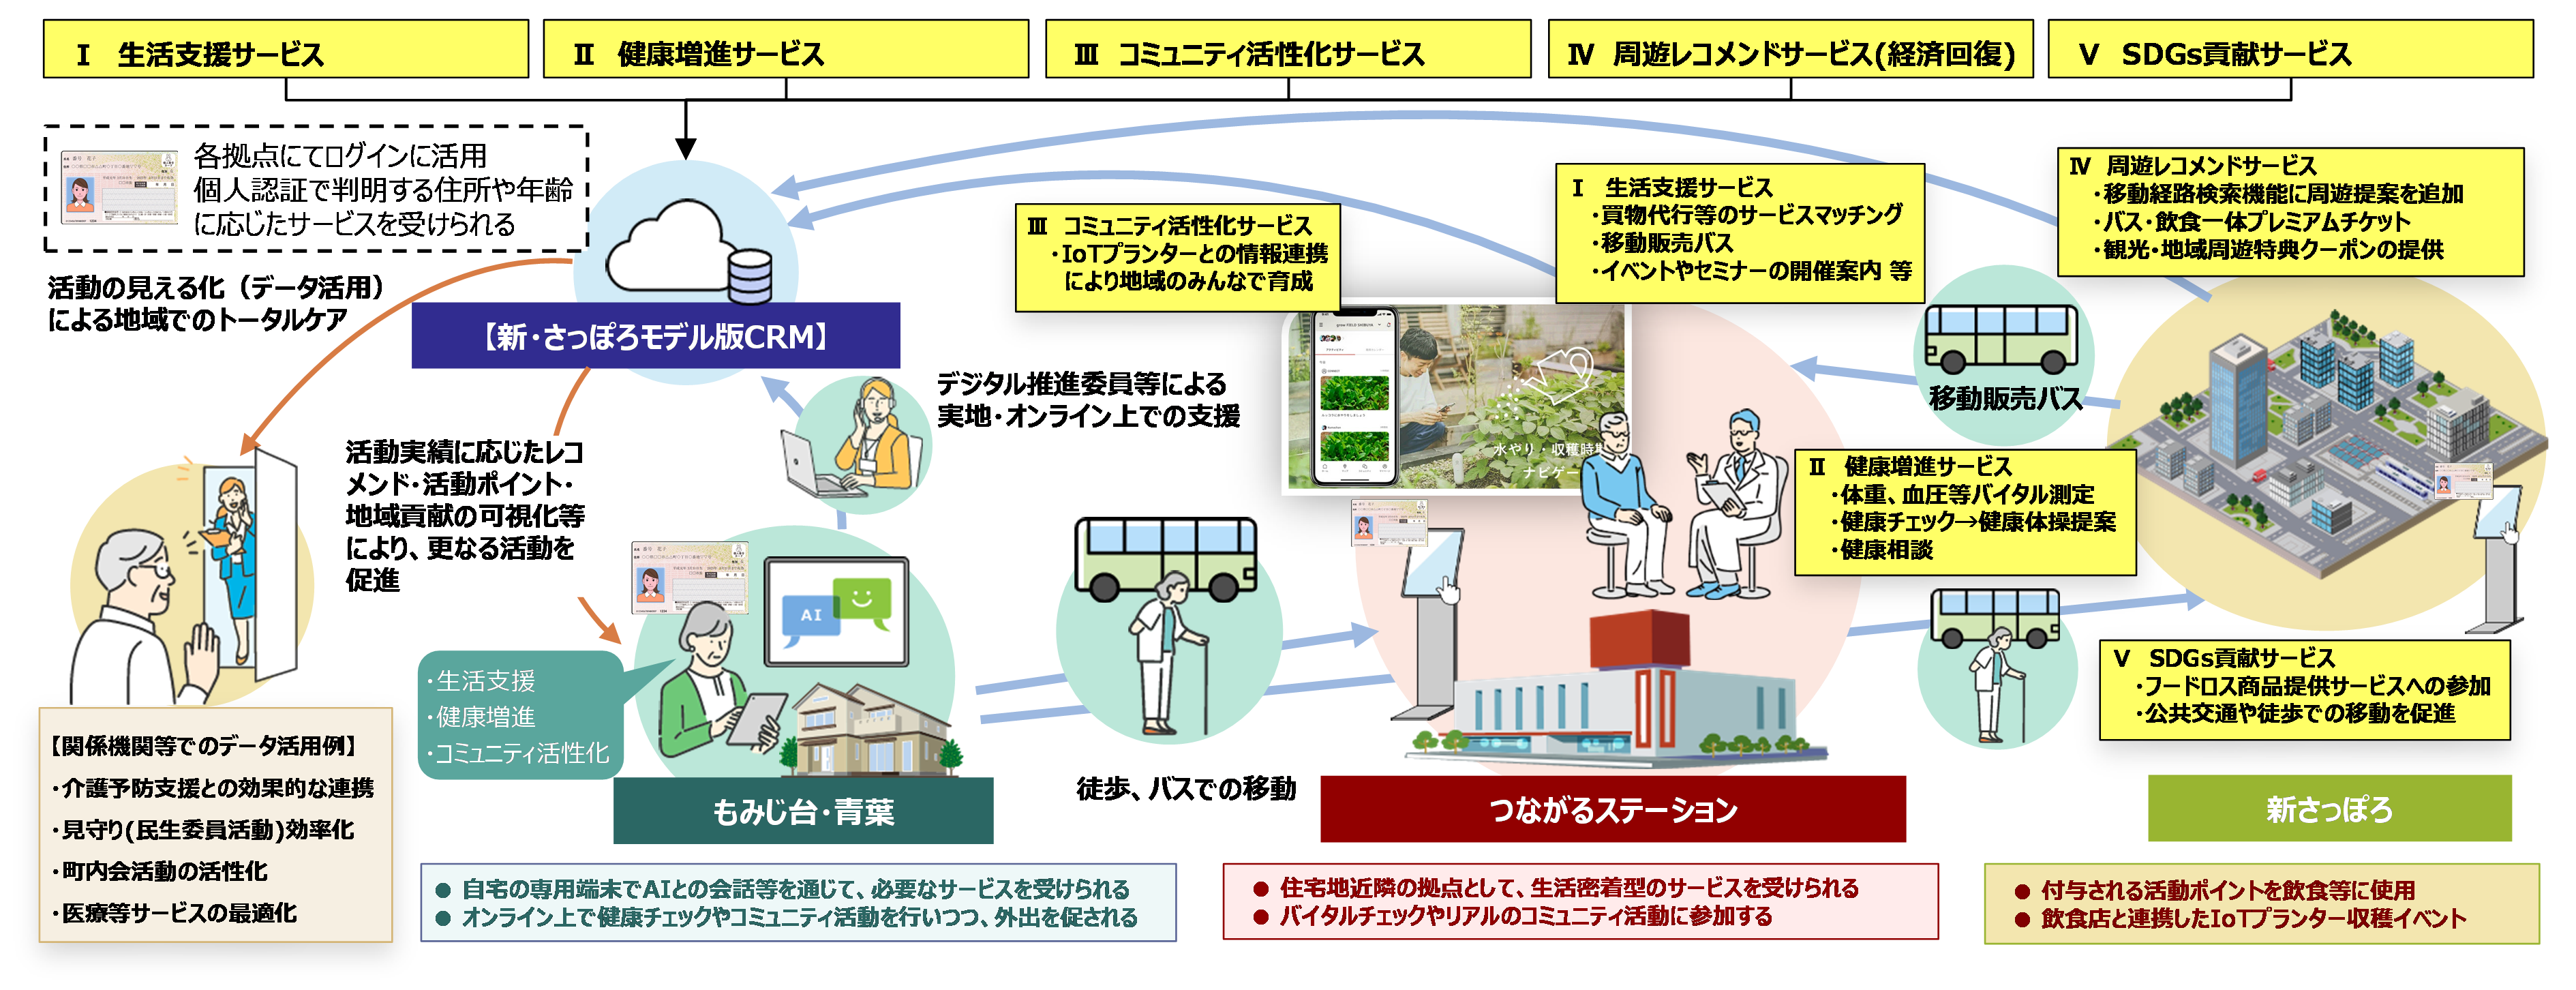 札幌市、TISを起用したスマートシティ推進事業の詳細を発表　都市課題の解決にICTを活用[ニュース]